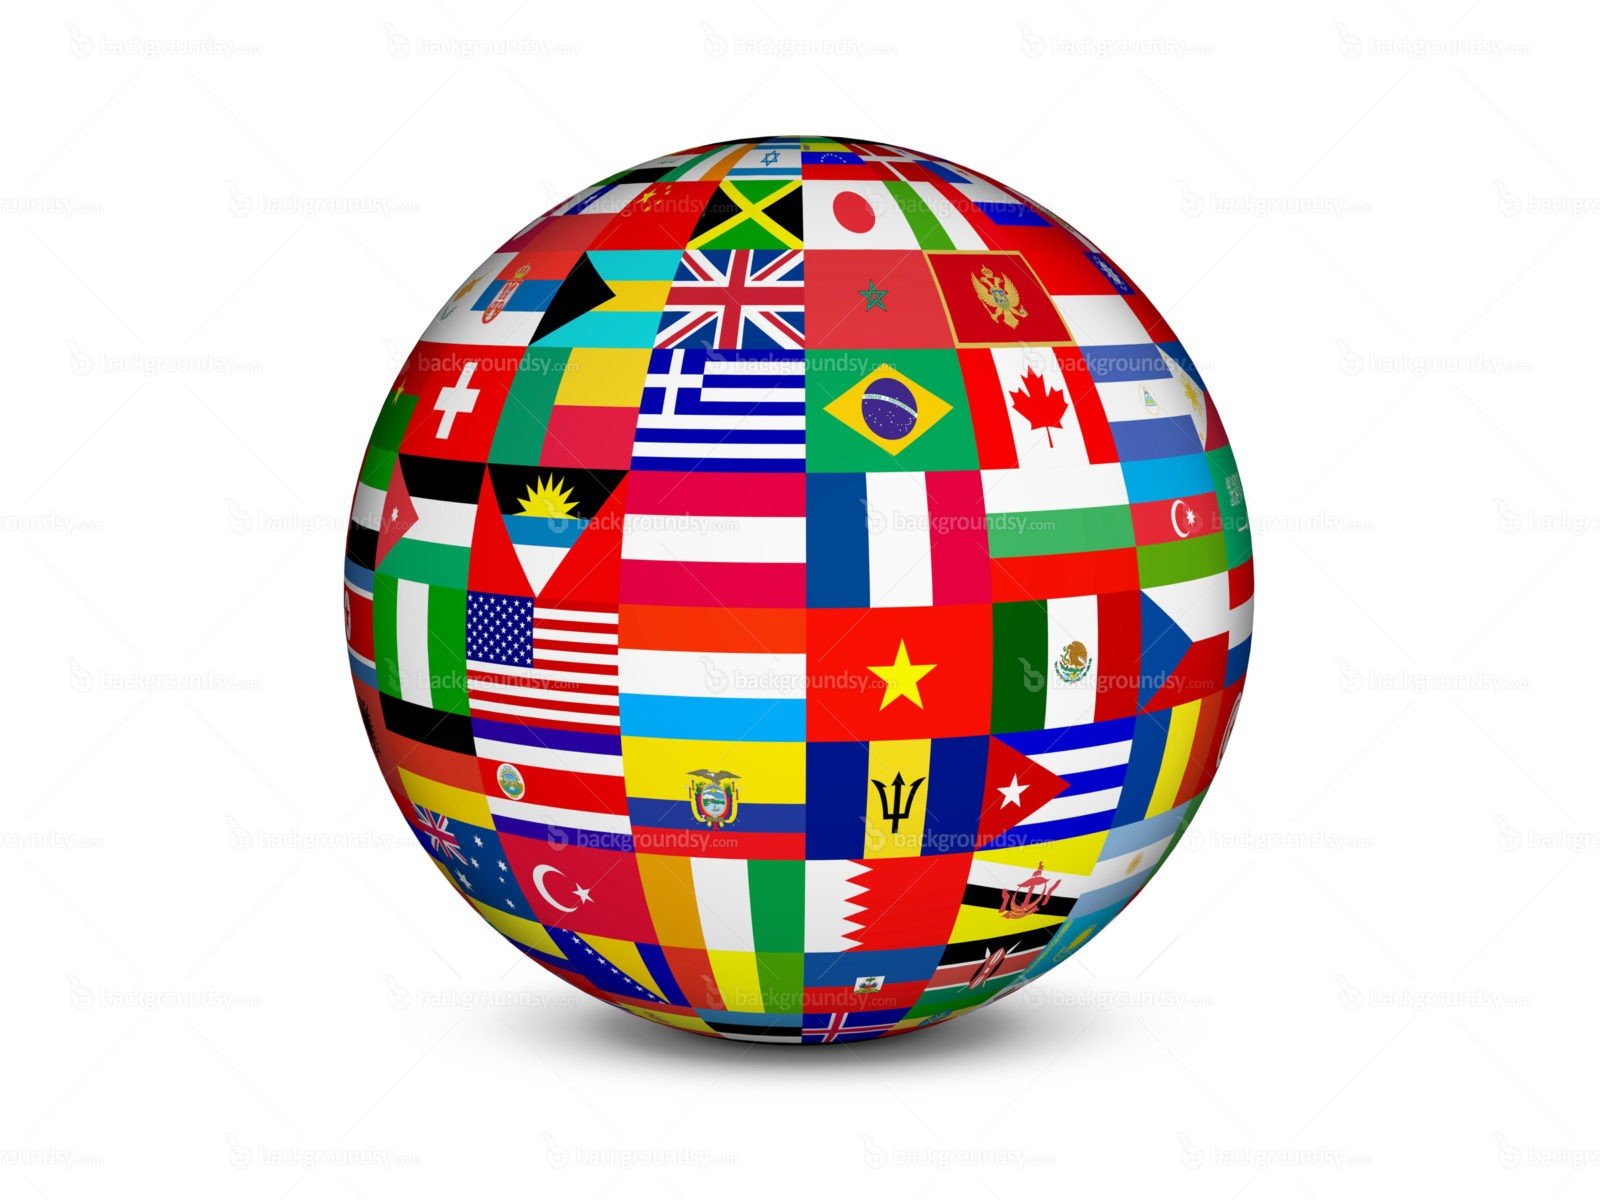 Картинки всех флагов на планете (64 фото) » Картинки и статусы проокружающий мир вокруг